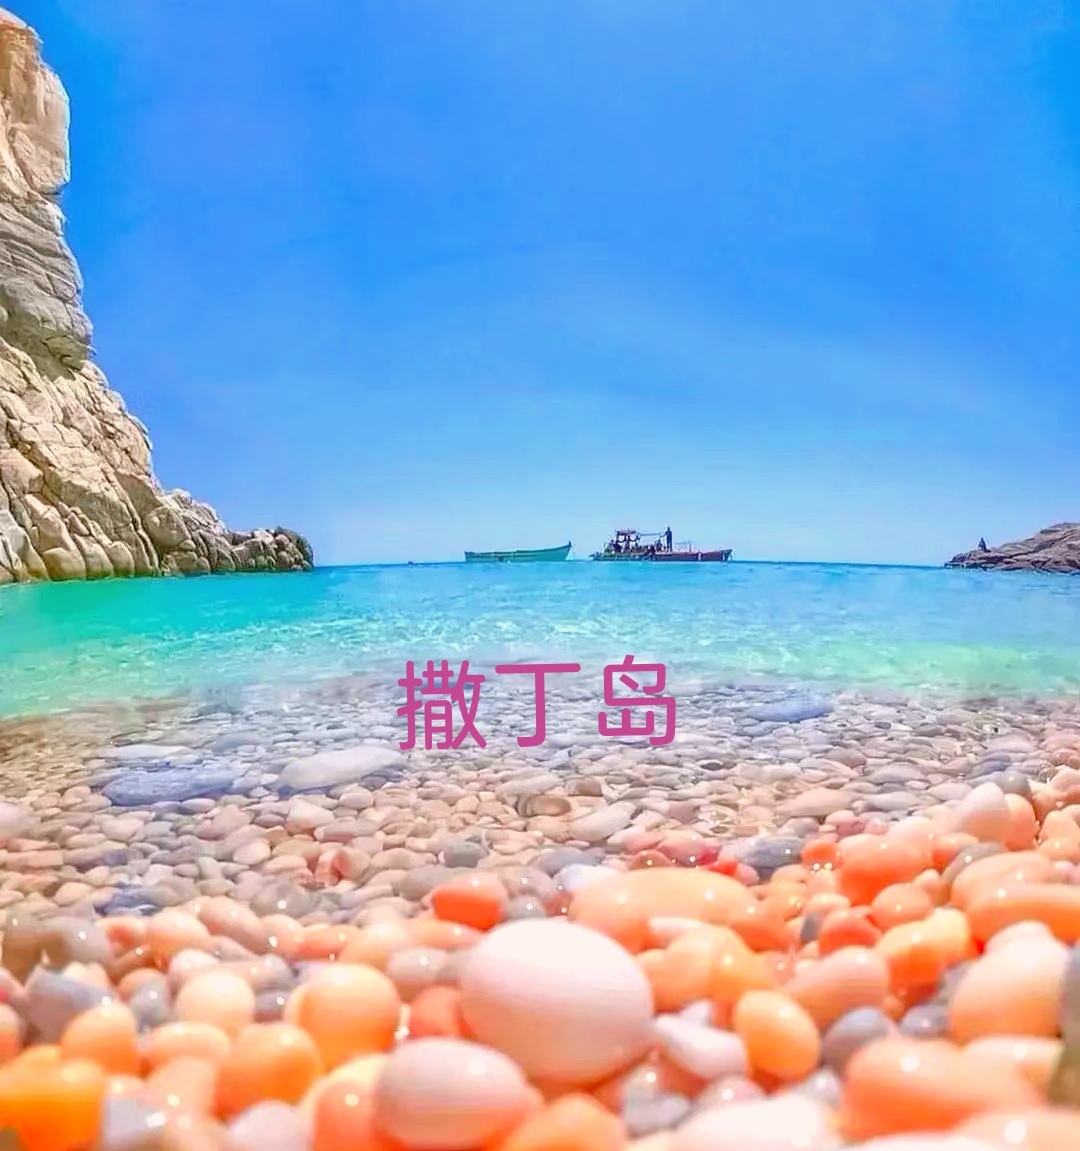 第一眼是不是会看成鸡蛋🥚？不！这不是鸡蛋，这是意大利海边的鹅卵石！这里是撒丁岛，意大利独有的浪漫天堂